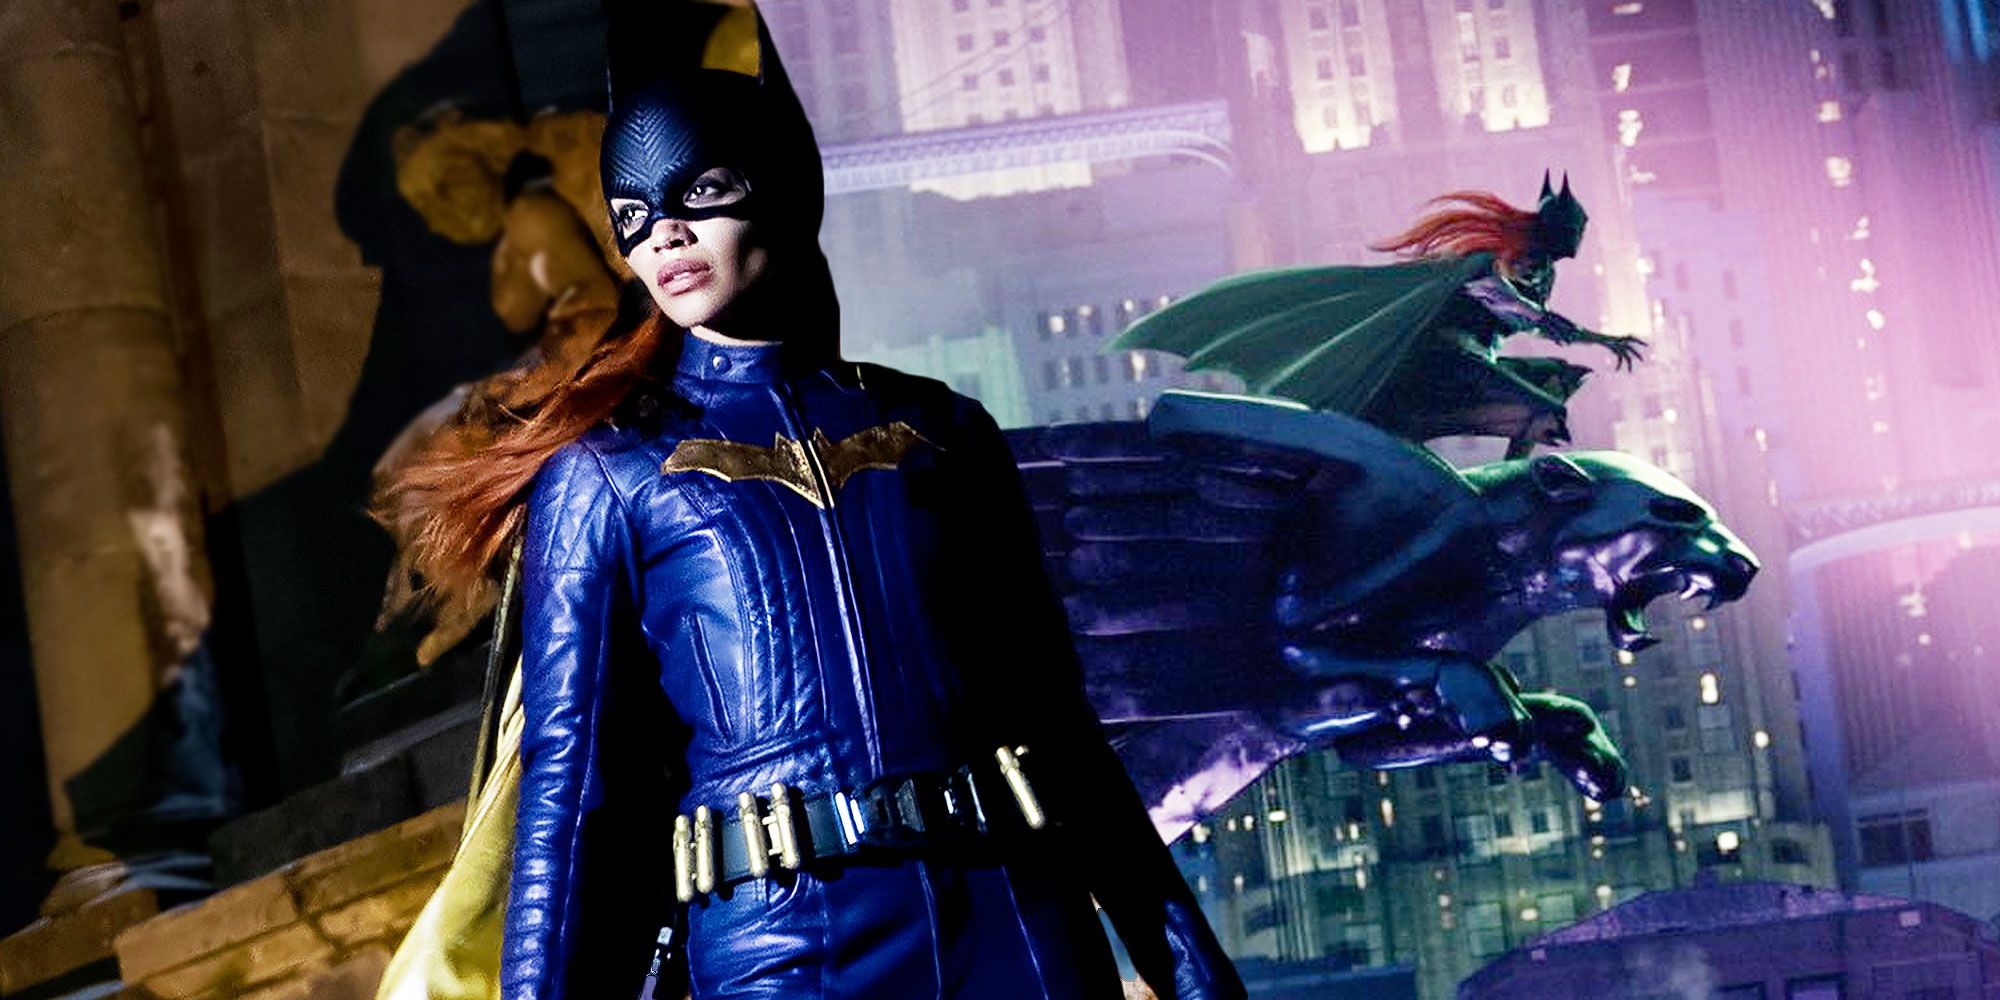 Las fotos del set de Batgirl revelan las gafas de Barbara Gordon Batsuit